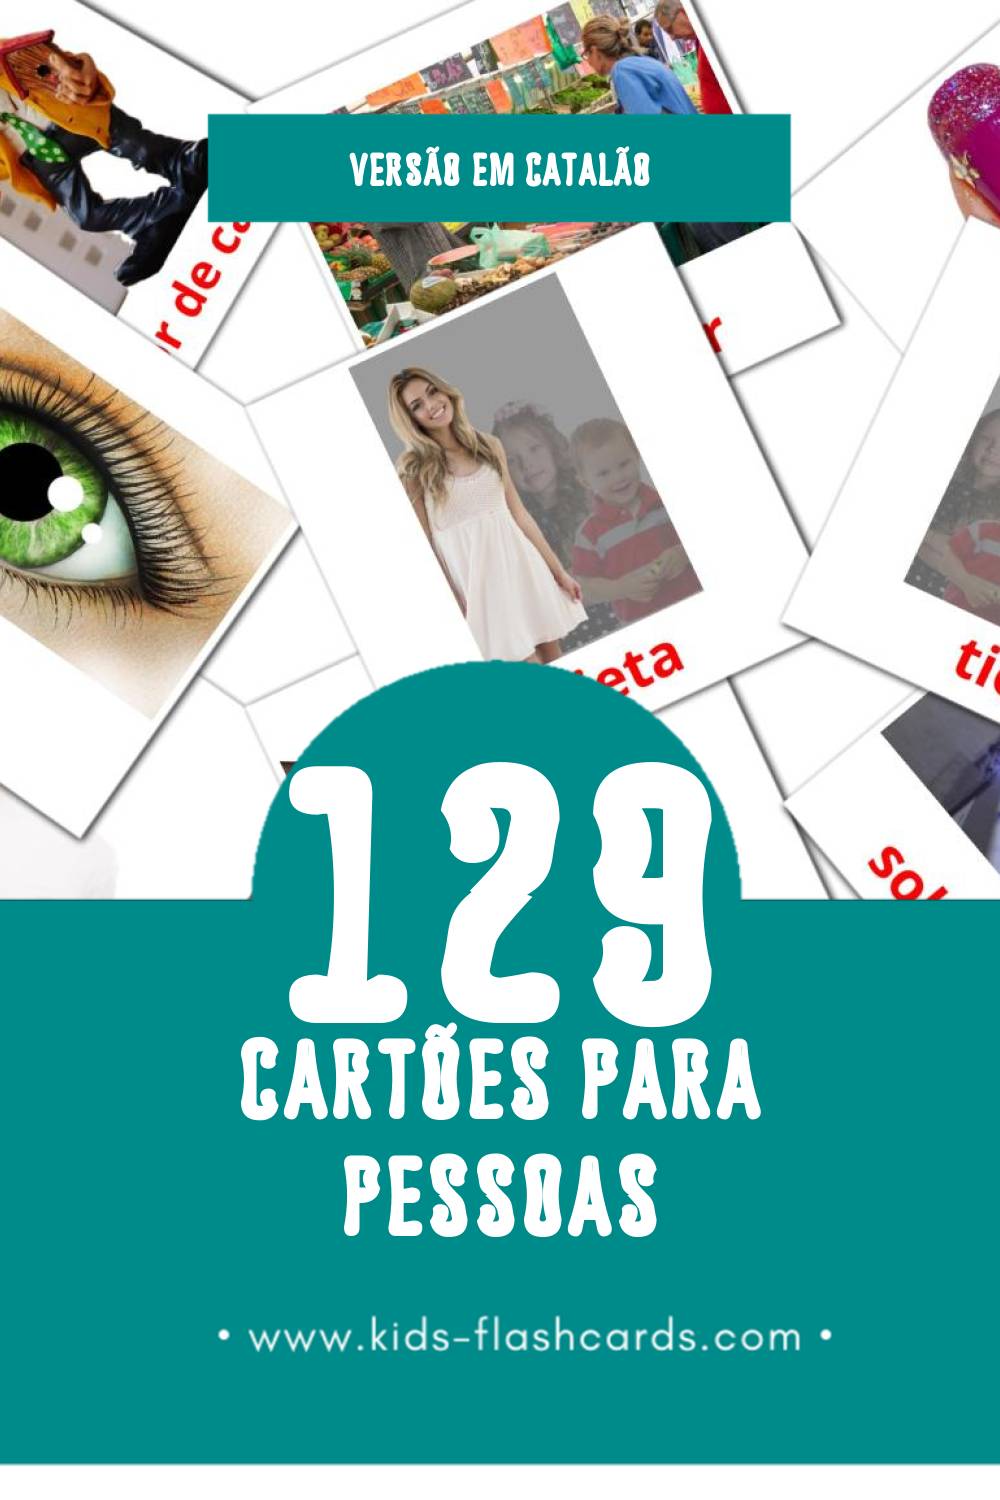 Flashcards de Persones Visuais para Toddlers (129 cartões em Catalão)